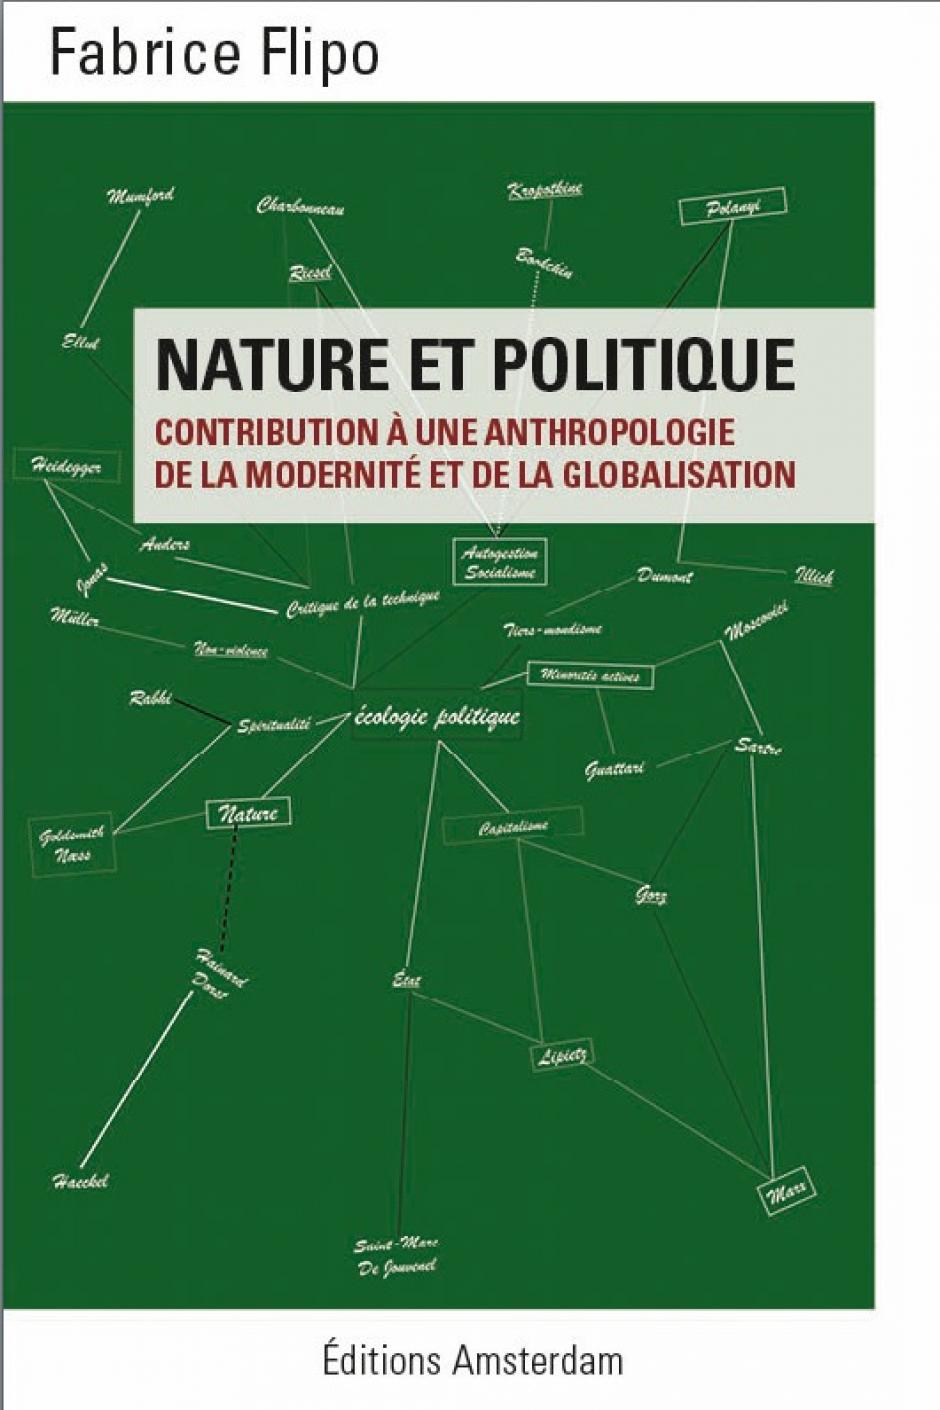 Nature et politique, Contribution à une anthropologie de la modernité et de la globalisation, Fabrice Flipo